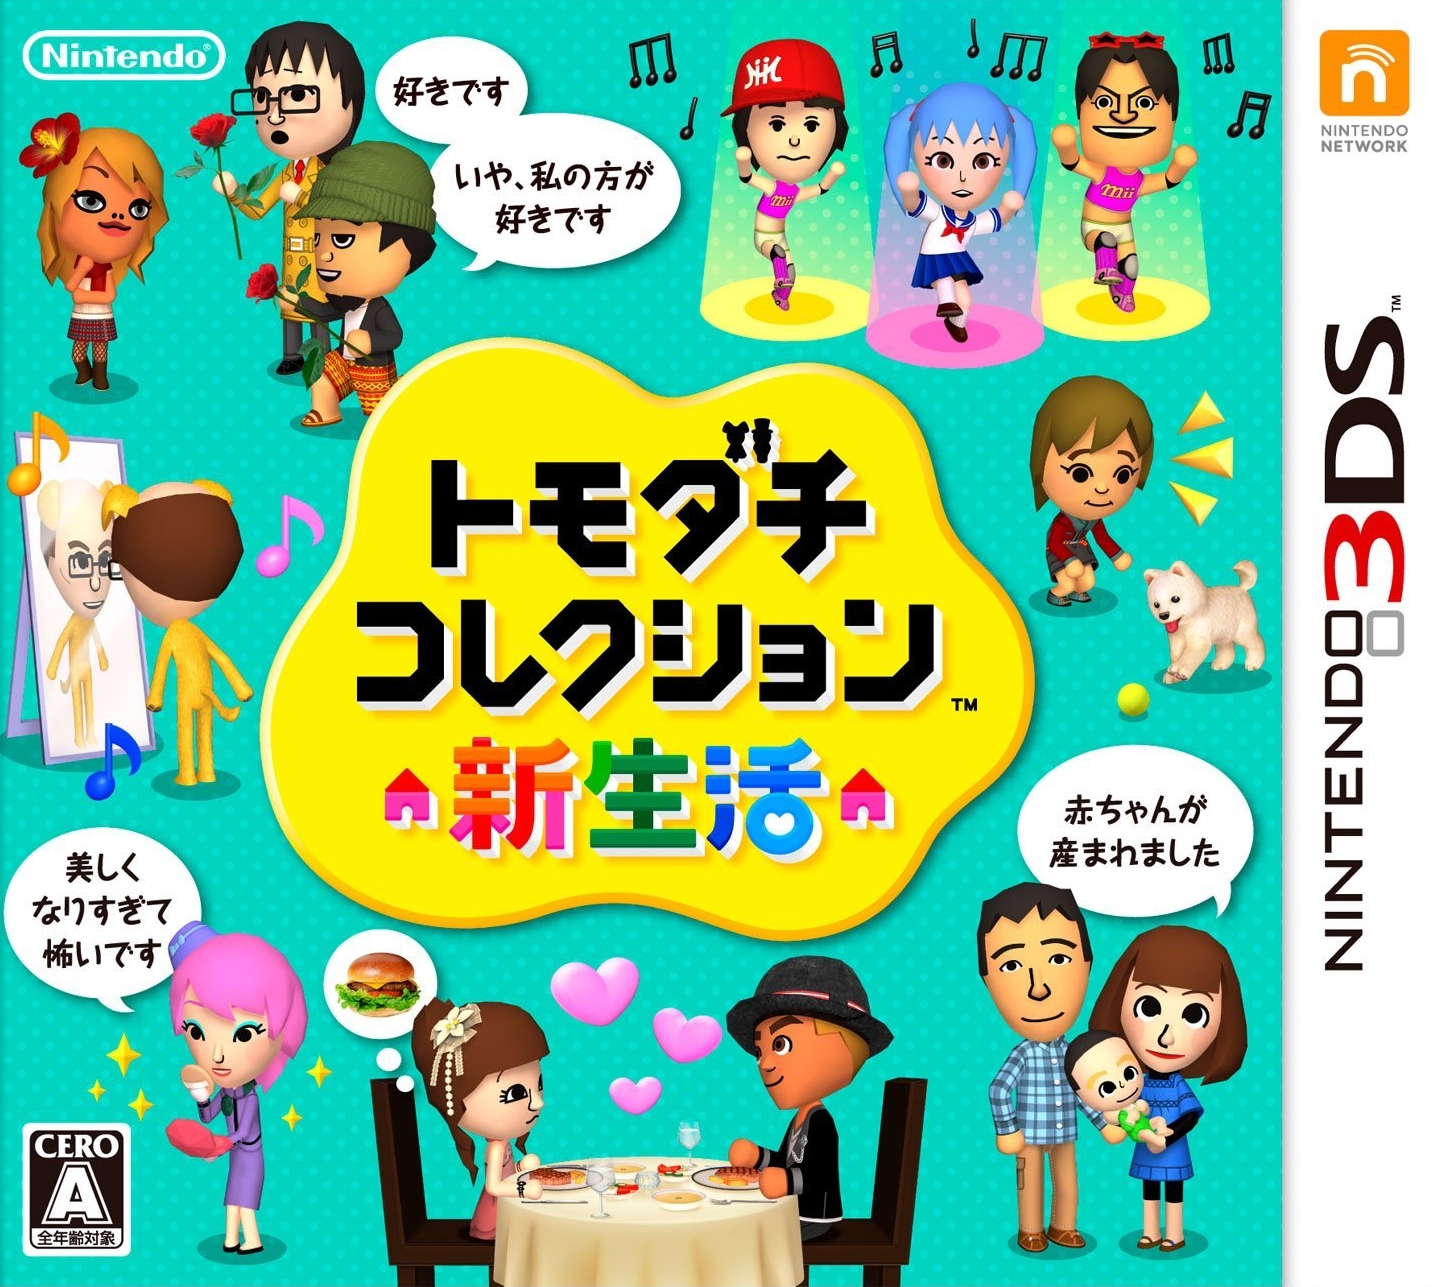 Tomodachi Life Nintendo 3ds Wiki Fandom Powered By Wikia 7910